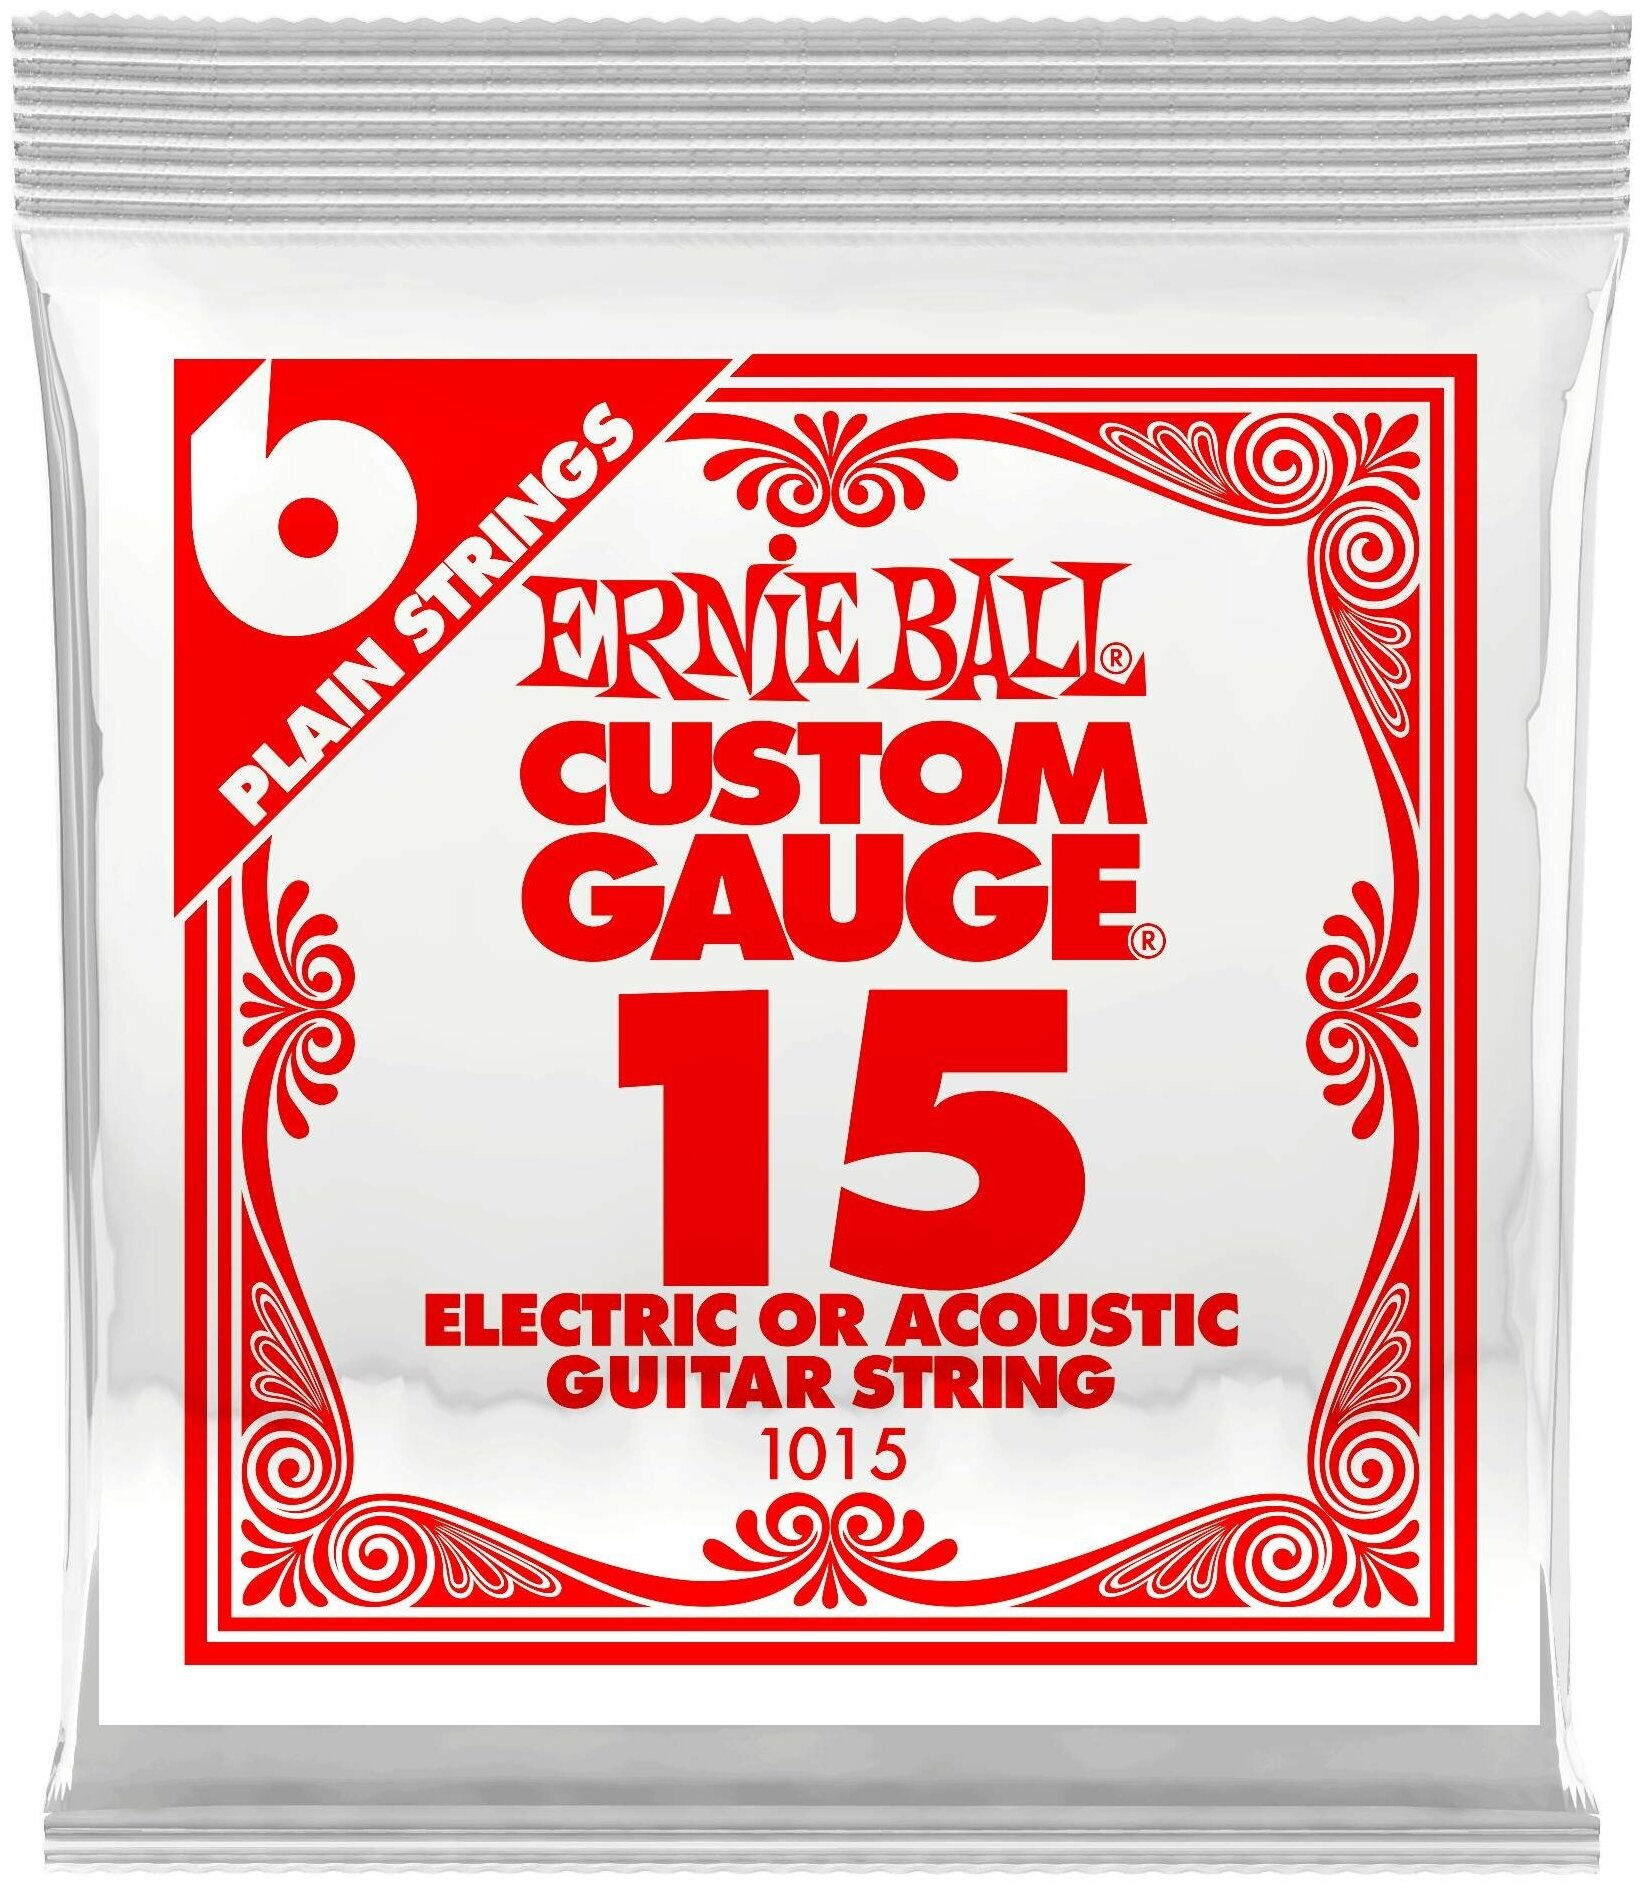 Струна для акустической и электрогитары Ernie Ball P01015 Custom gauge, сталь, калибр 15, Ernie Ball (Эрни Бол)